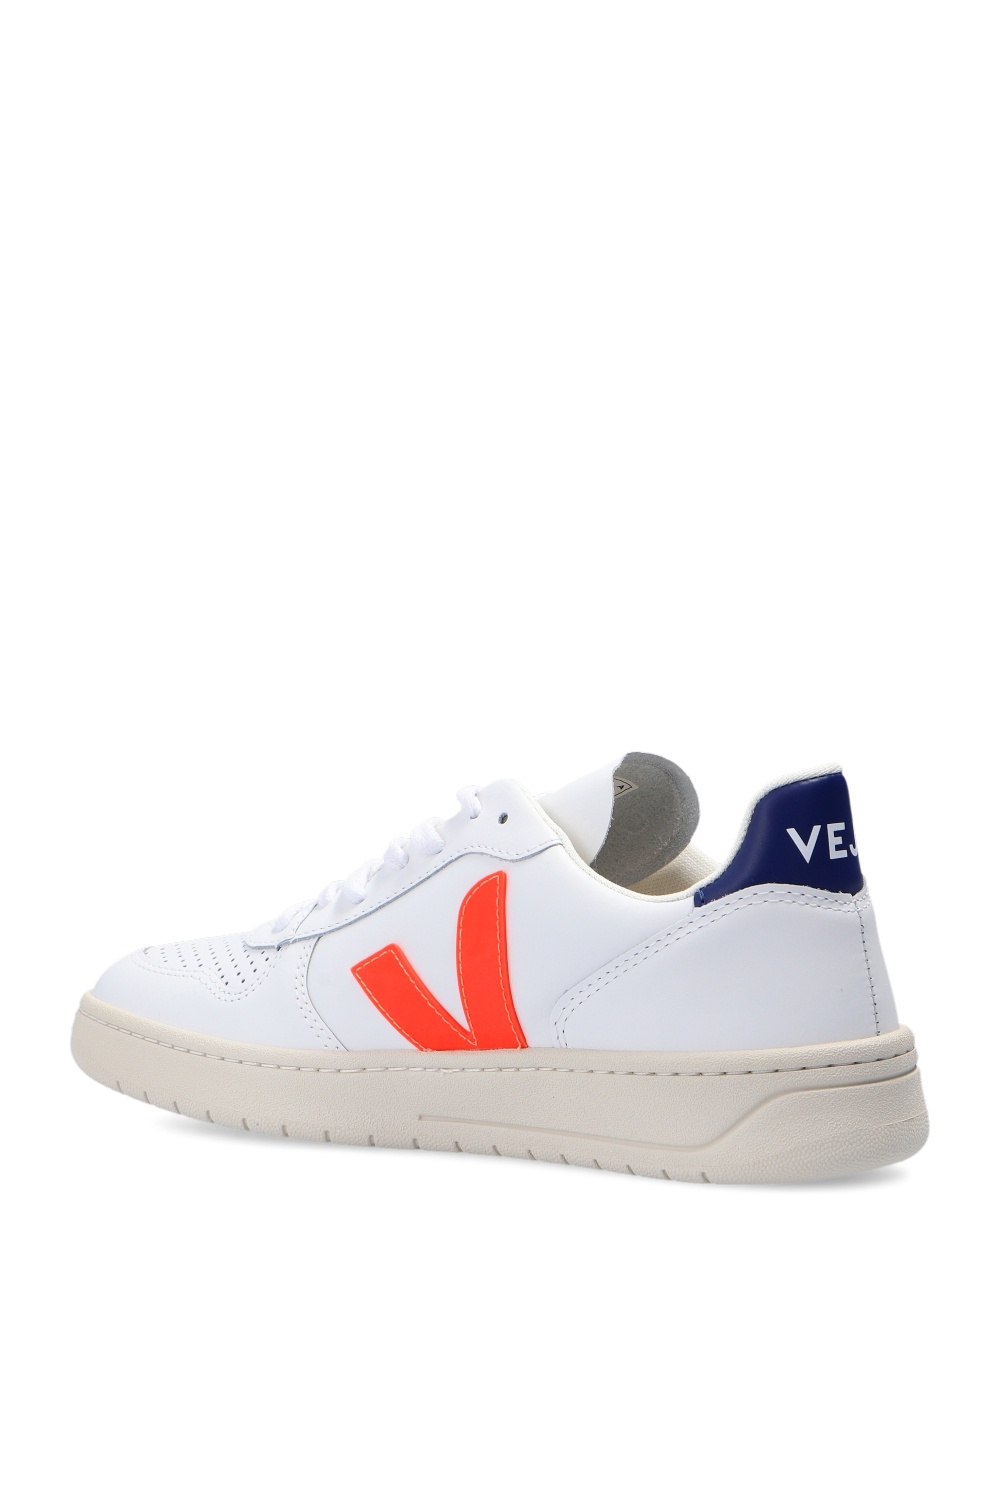 Veja ‘V-10’ sneakers